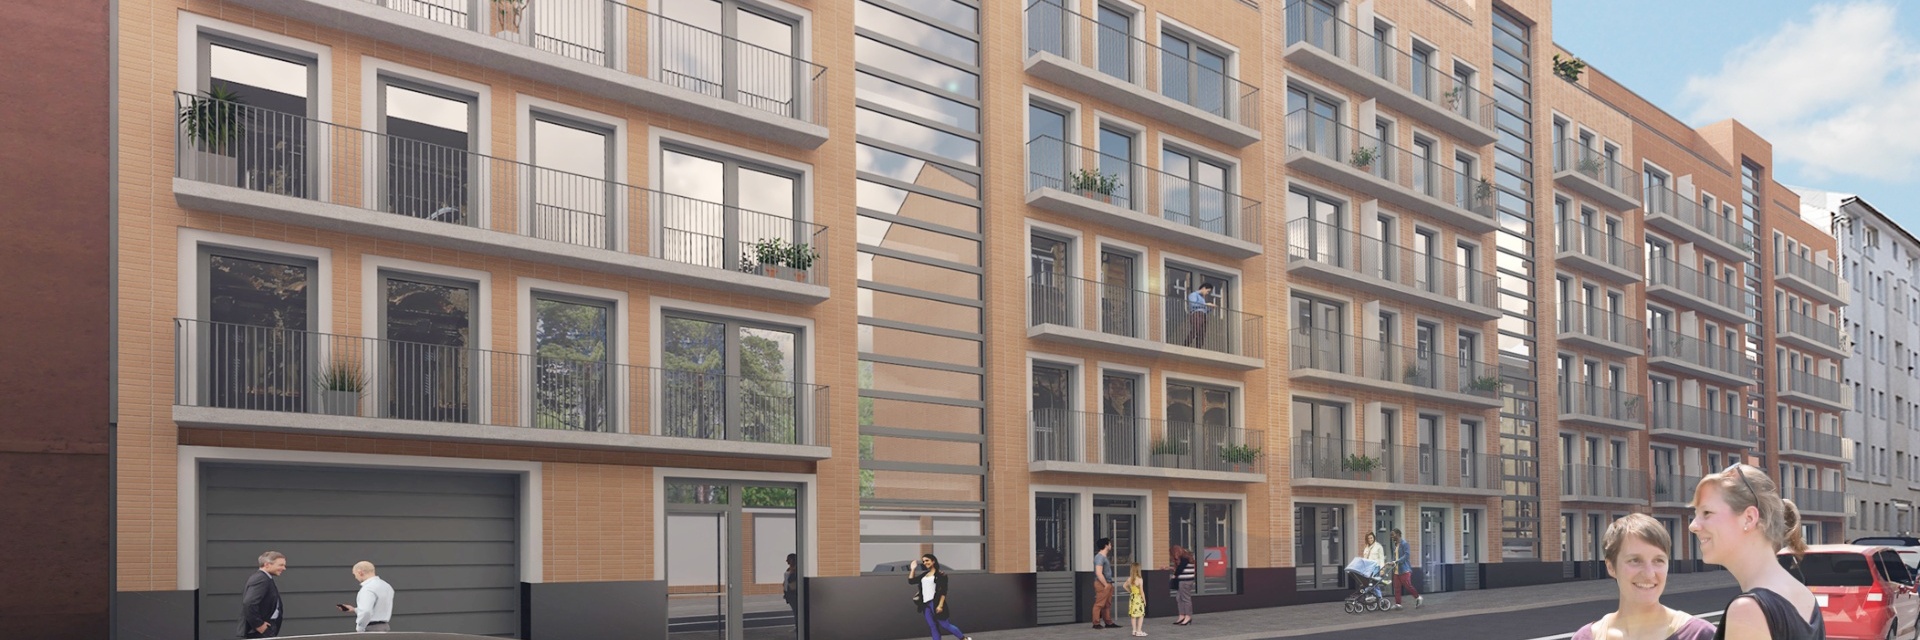 Prodej moderního bytu 3+kk s balkonem - Bytový dům Lido II